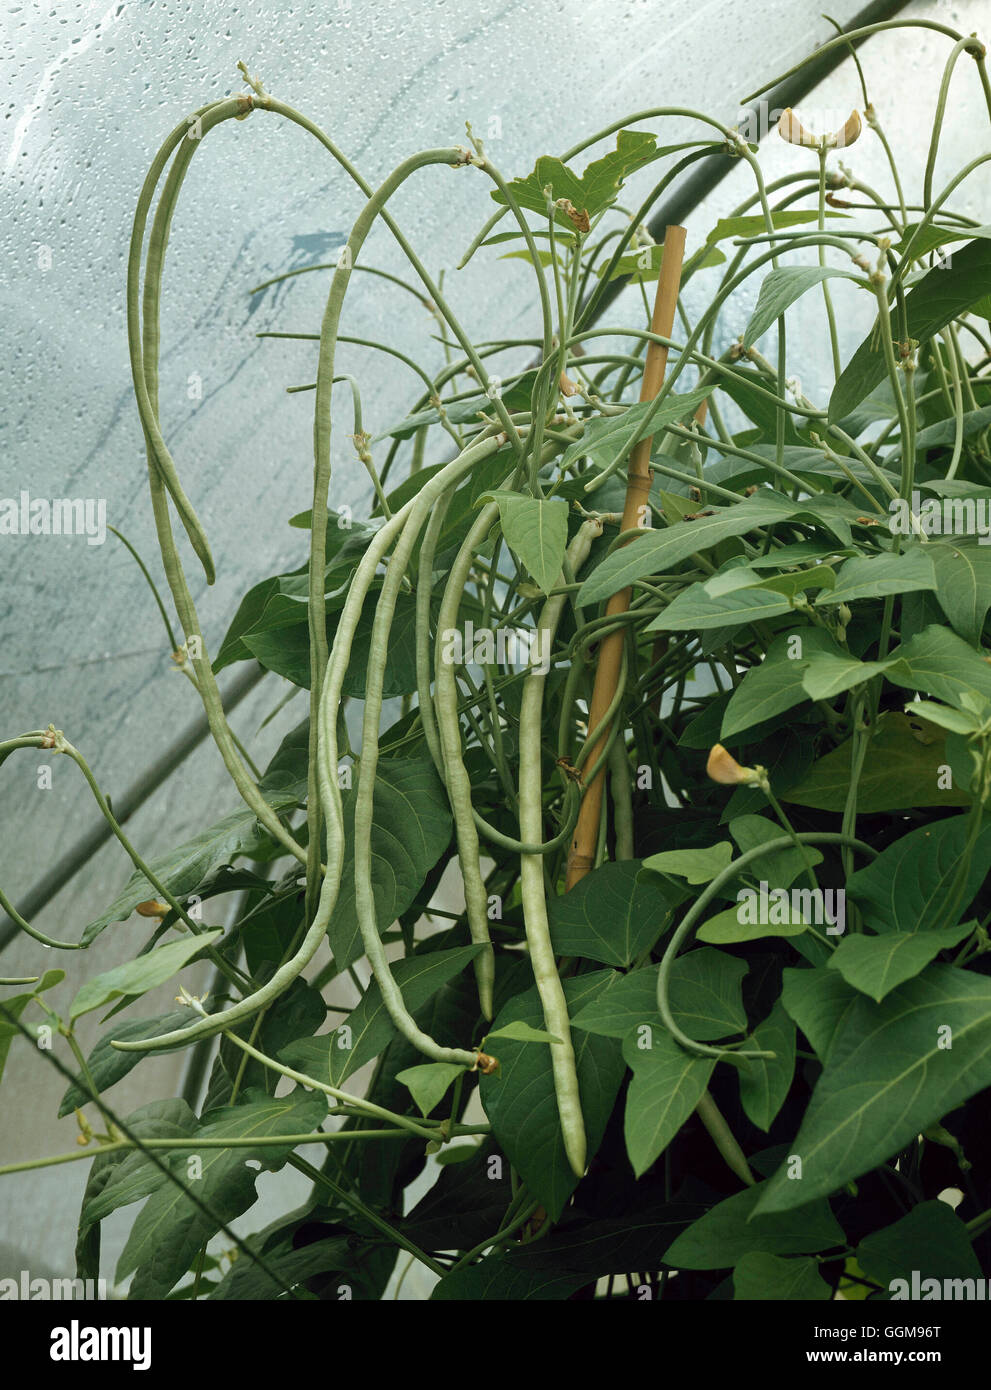 Asparagus Bean - also known as the Yard Long Bean (Vigna vuguiculata ssp. sesquipedalis)"""""   VEG074737 Stock Photo